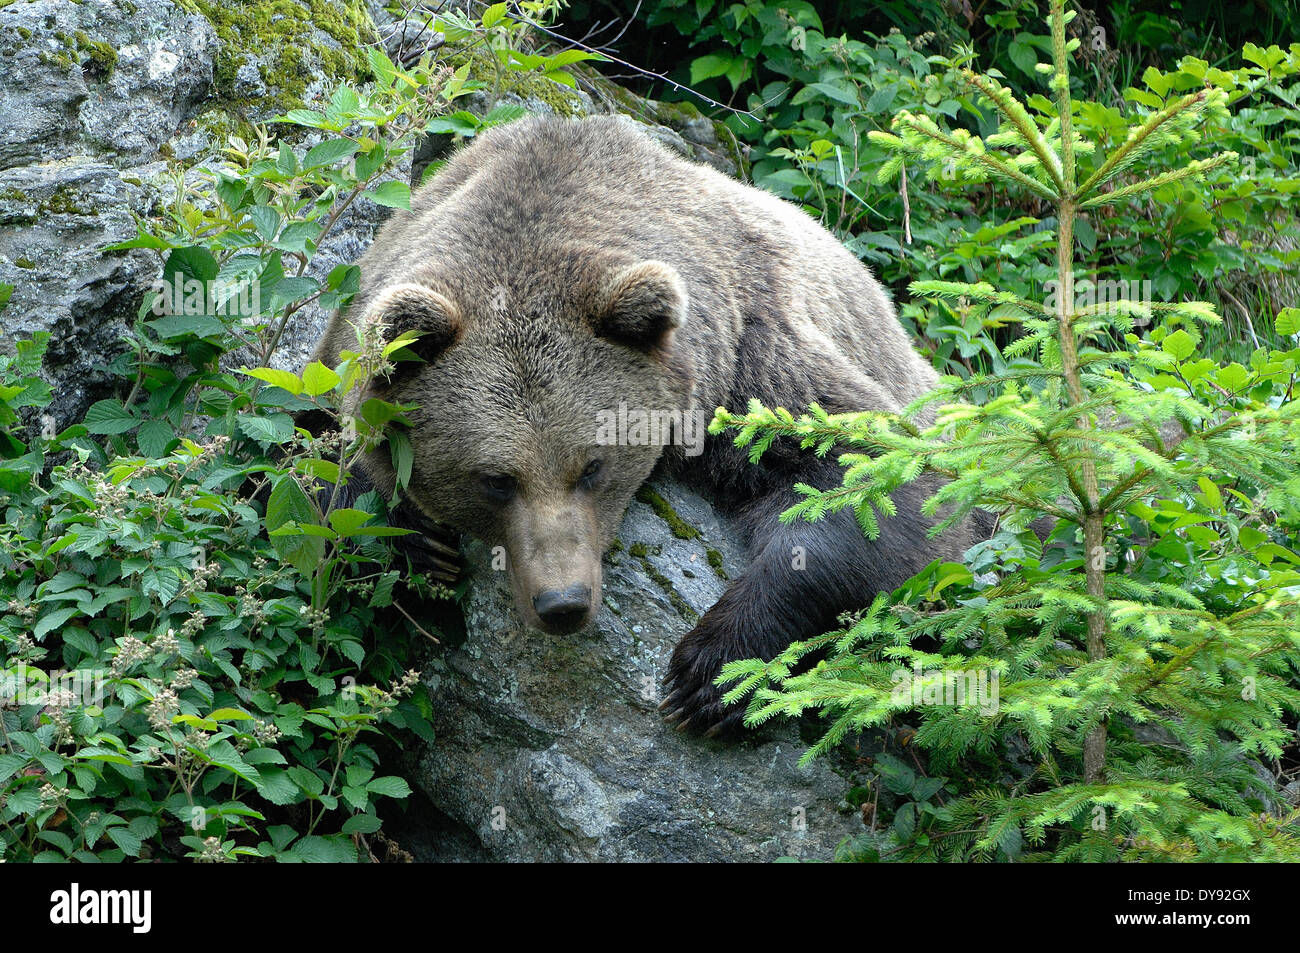 Brown bear, European bear, European brown bear, predator, Ursus arctos, animal, animals, Germany, Europe, Stock Photo